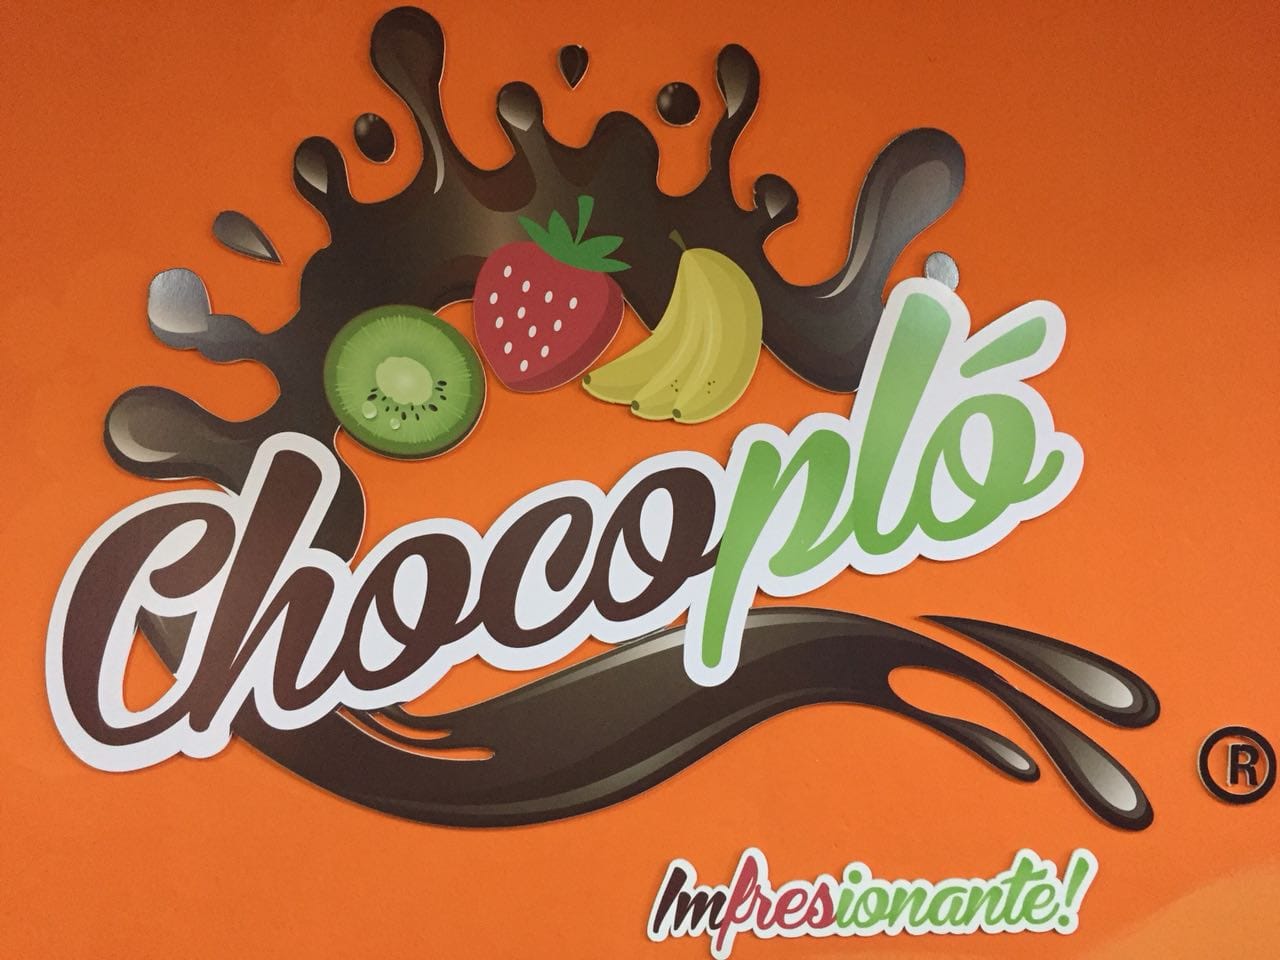 Logo de Chocopló